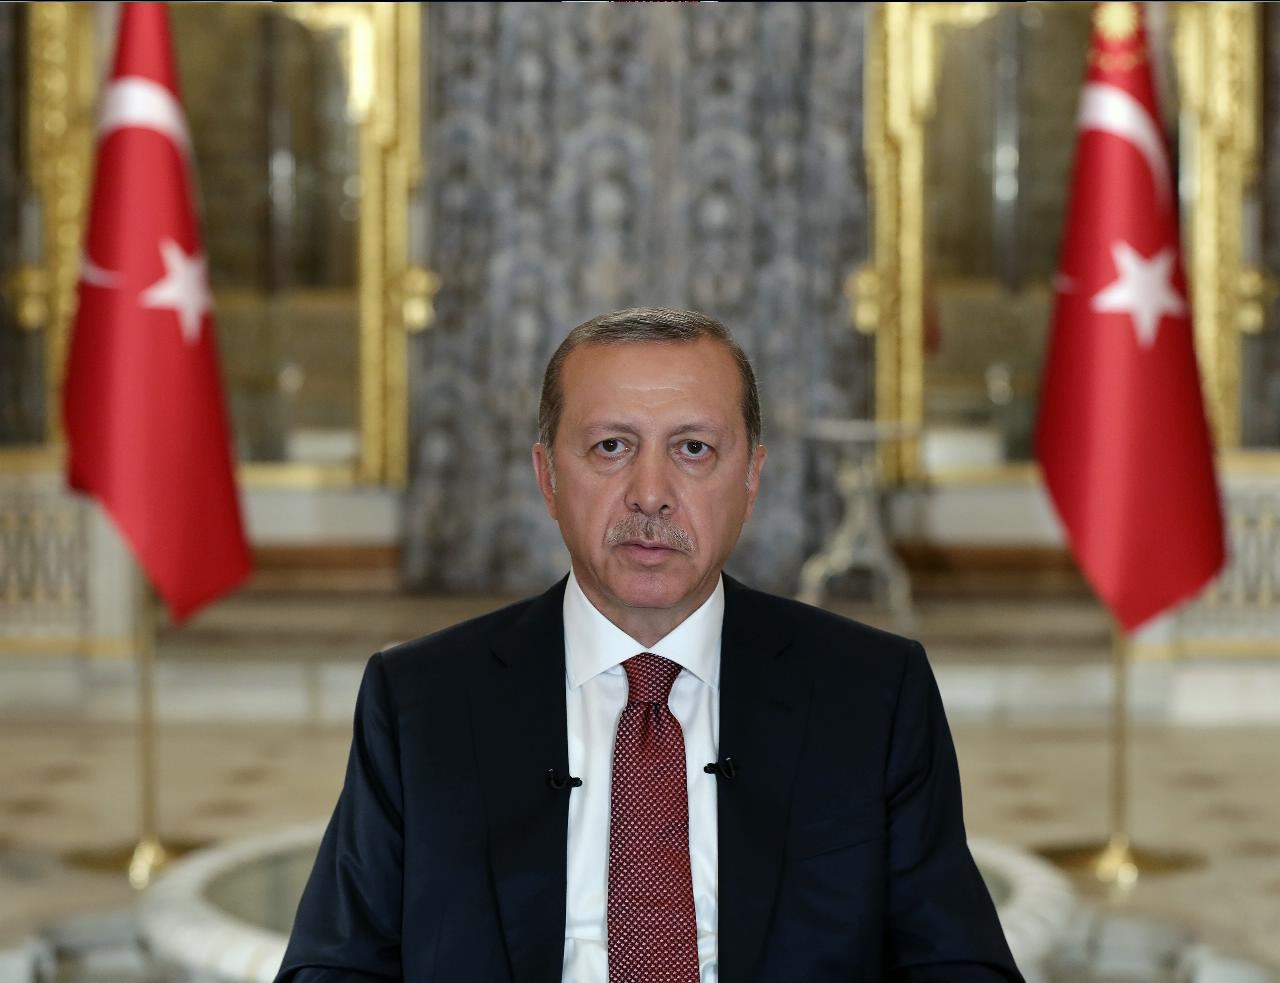 خاطب رئيس الجمهورية أردوغان الشعب عن طريق فيديو نشره بخصوص محاولة انقلاب 15 يوليو.